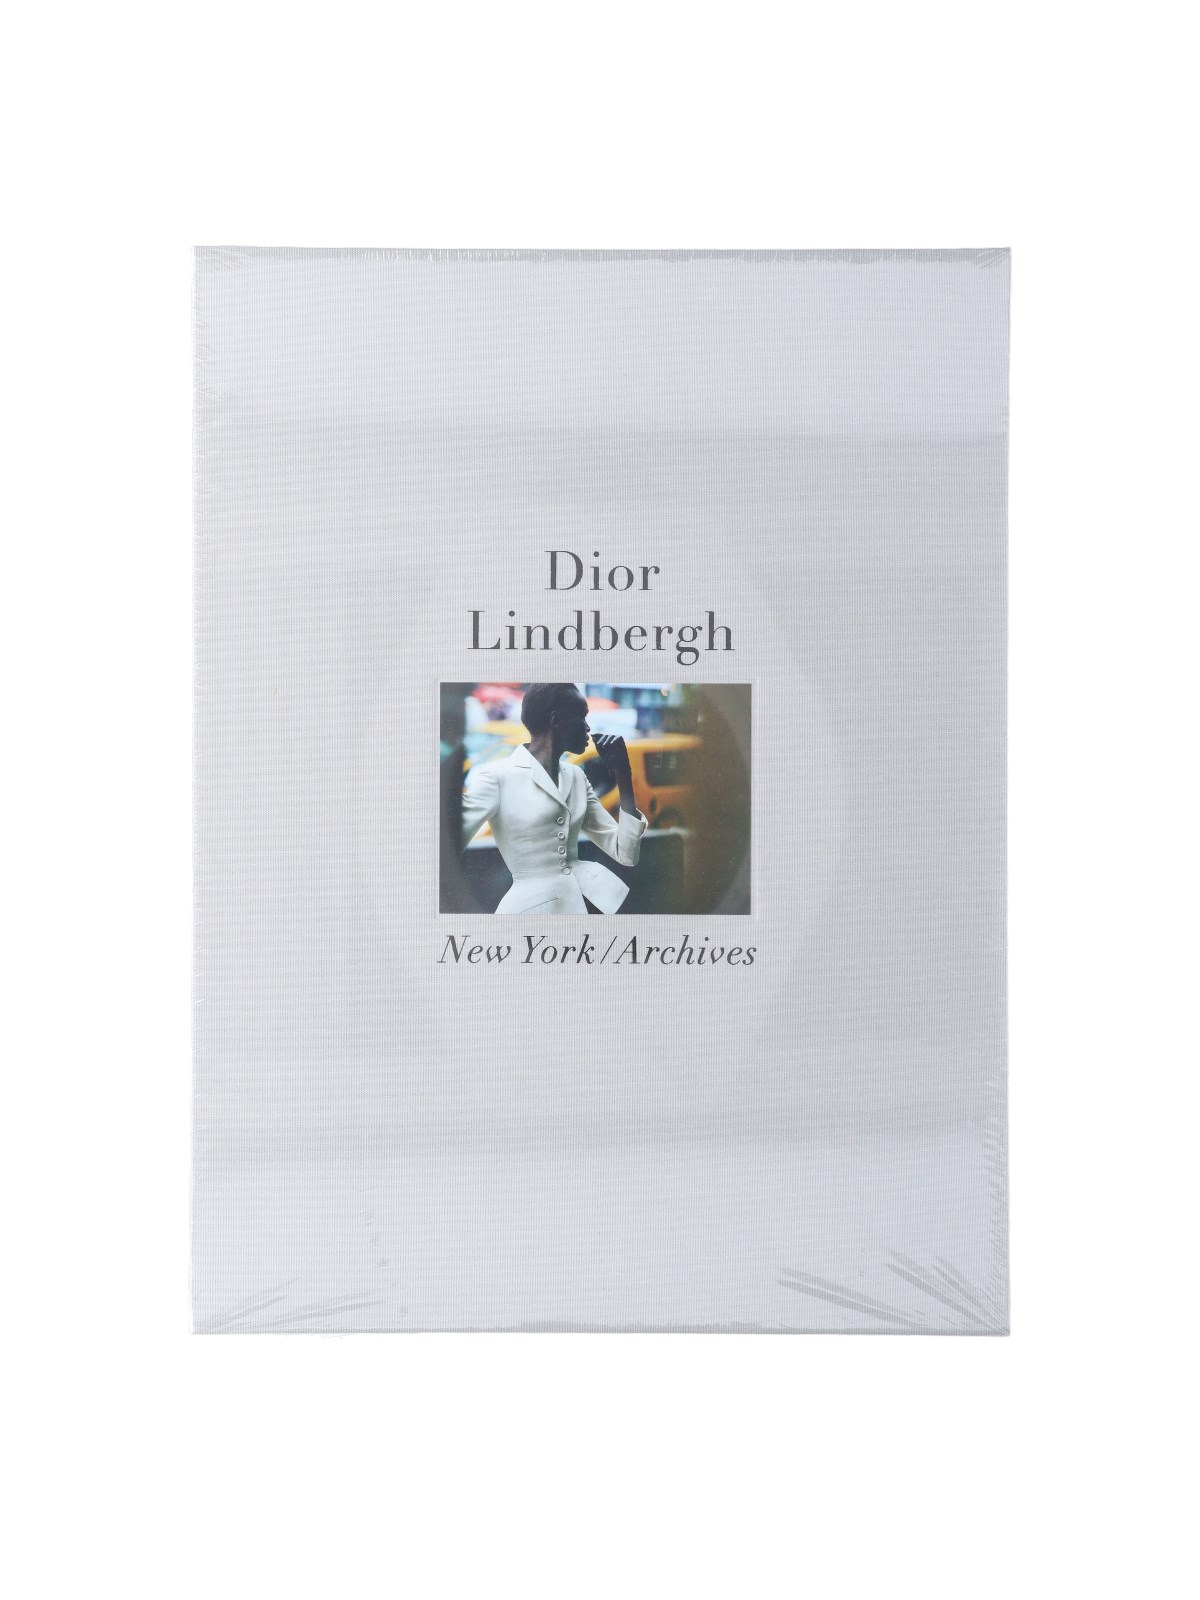 Taschen 'dior' By Peter Lindbergh In White